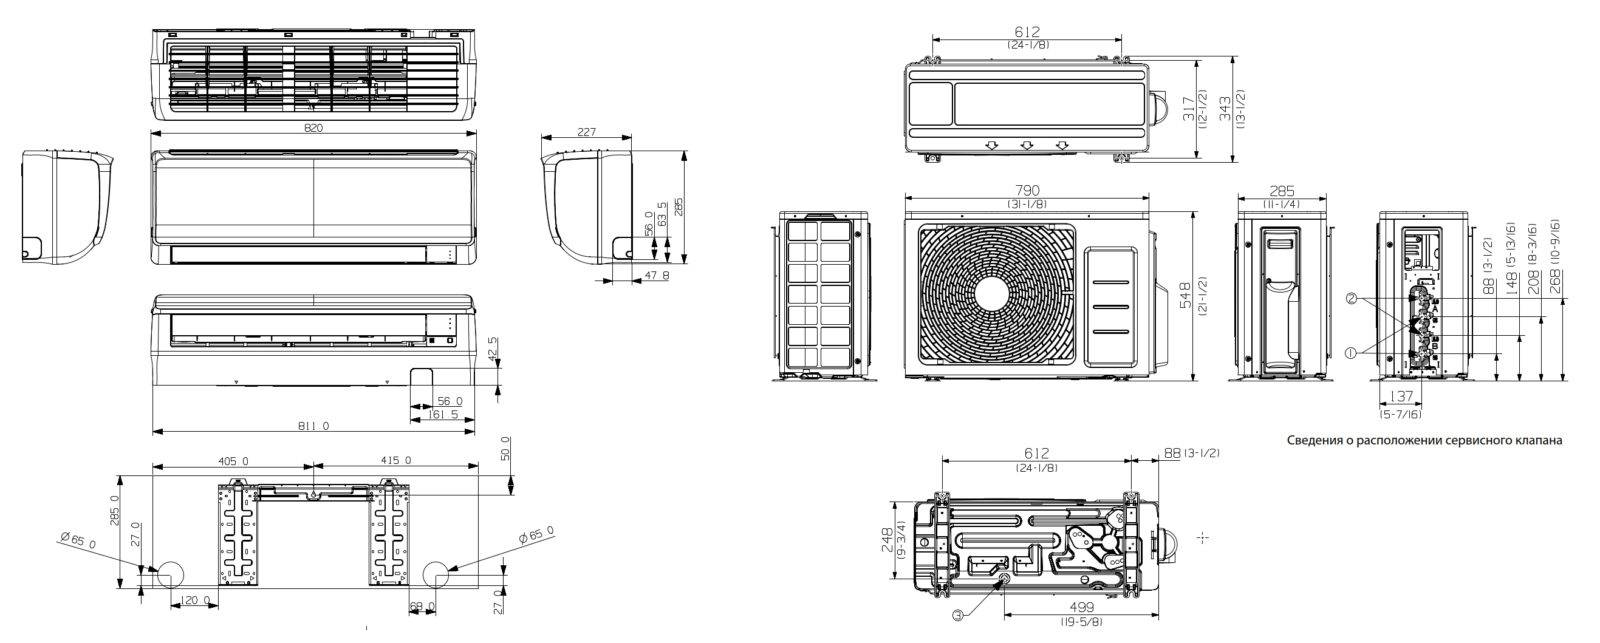 Типы кондиционеров – кассетные и канальные кондиционеры, настенные сплит системы и мульти сплит системы, кондиционеры канального и кассетного типа